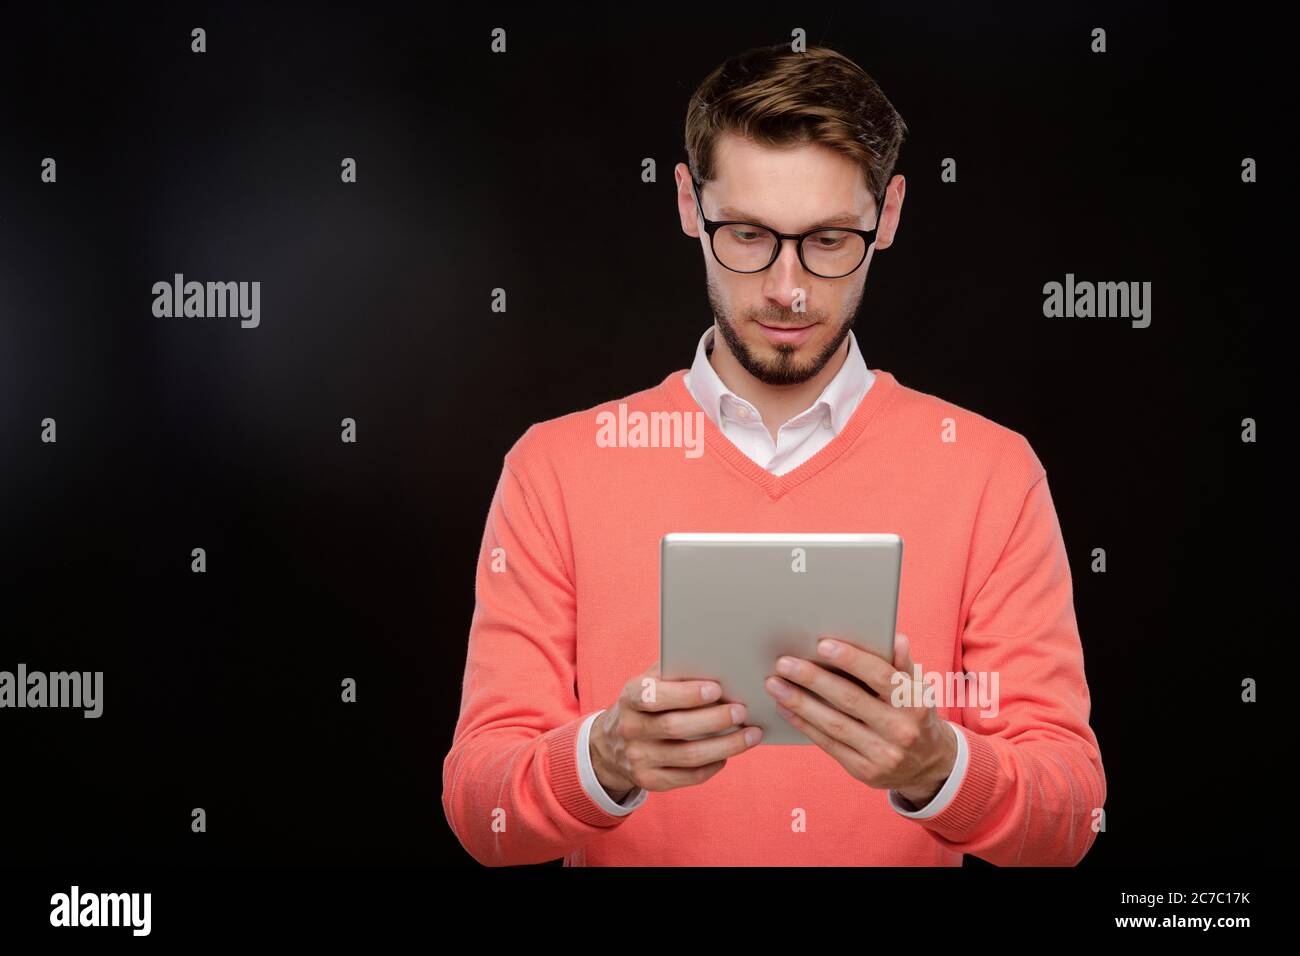 Jeune homme barbu concentré dans un chandail orange utilisant une tablette moderne sur fond noir, concept de médias sociaux Banque D'Images